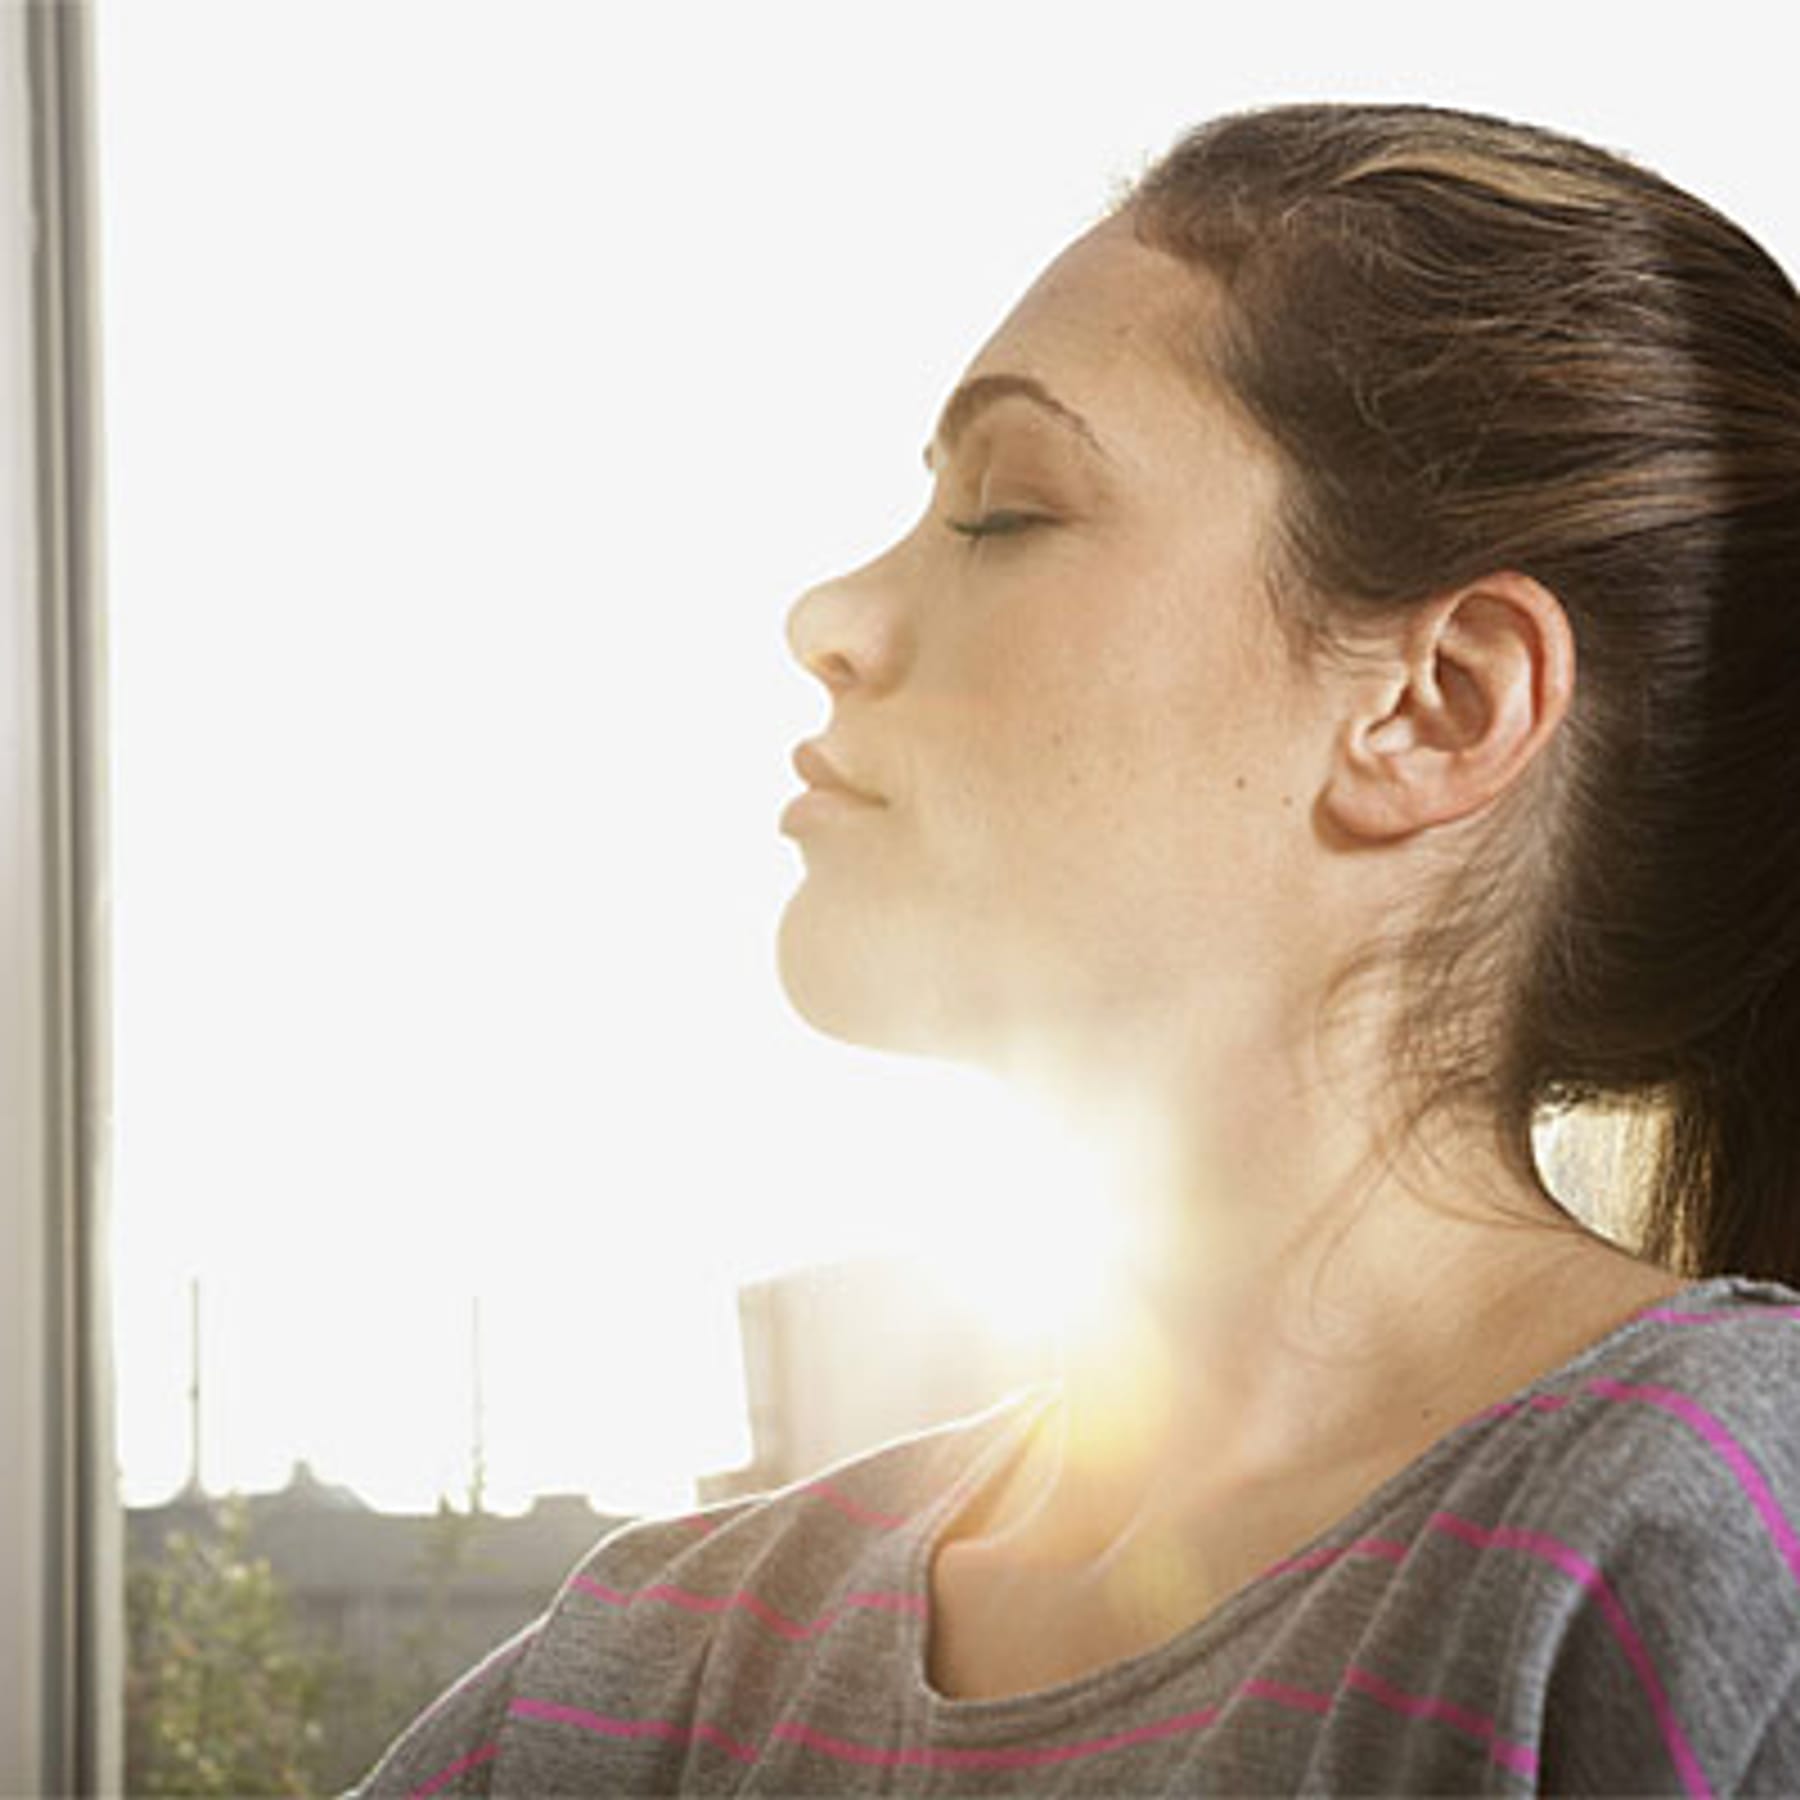 Sonnenschutz: Wie Sie Ihre Wohnung am besten vor Hitze schützen